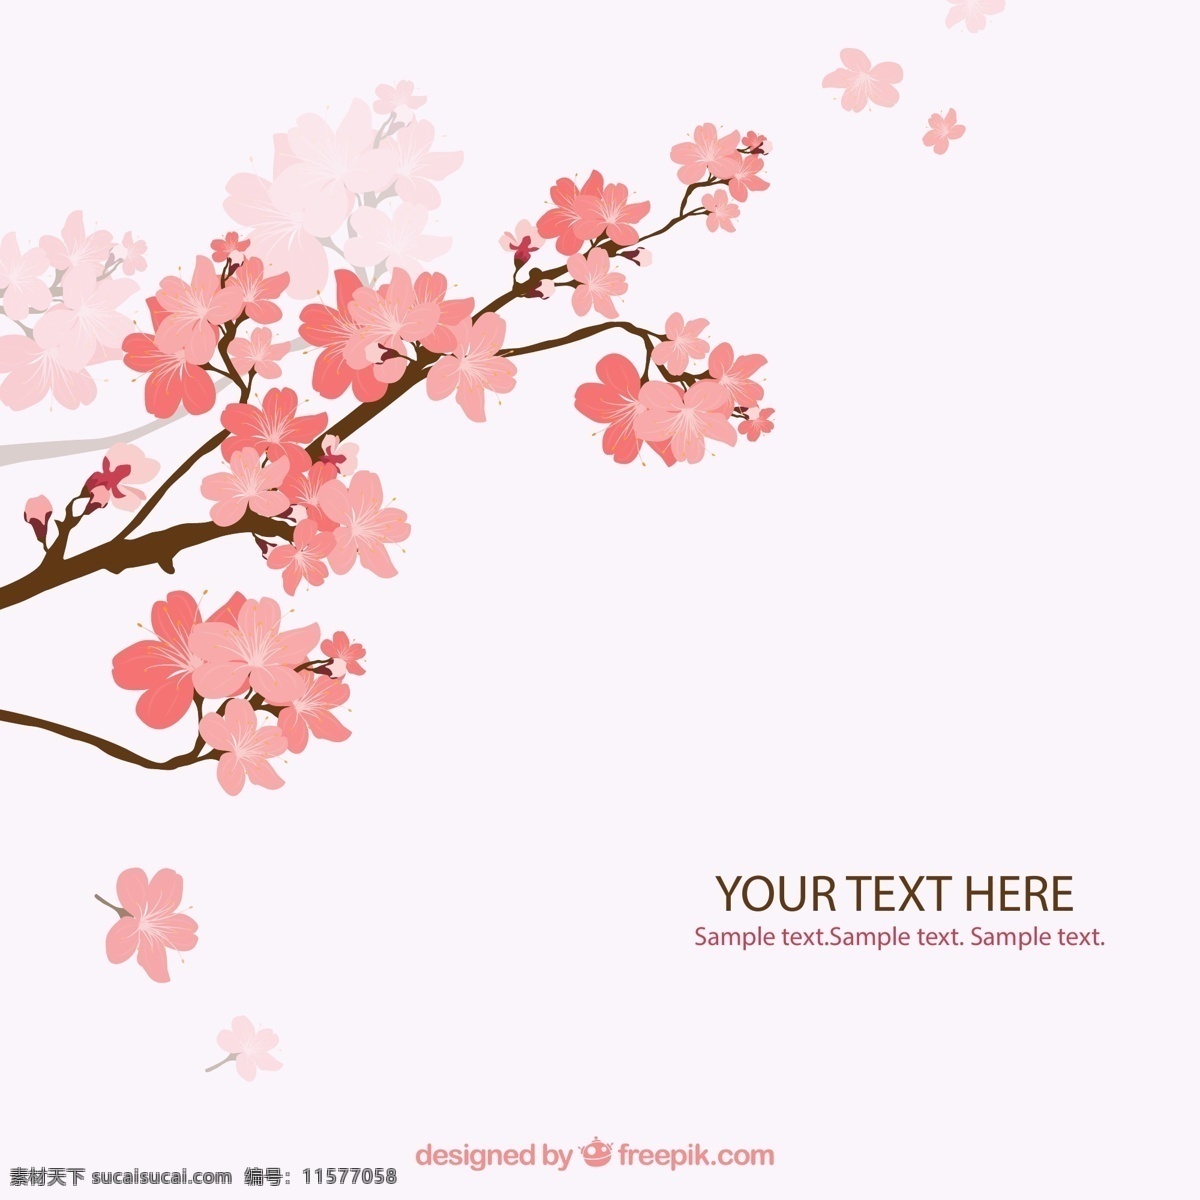 樱花 花枝 背景图片 花朵 矢量图 格式 矢量 高清图片